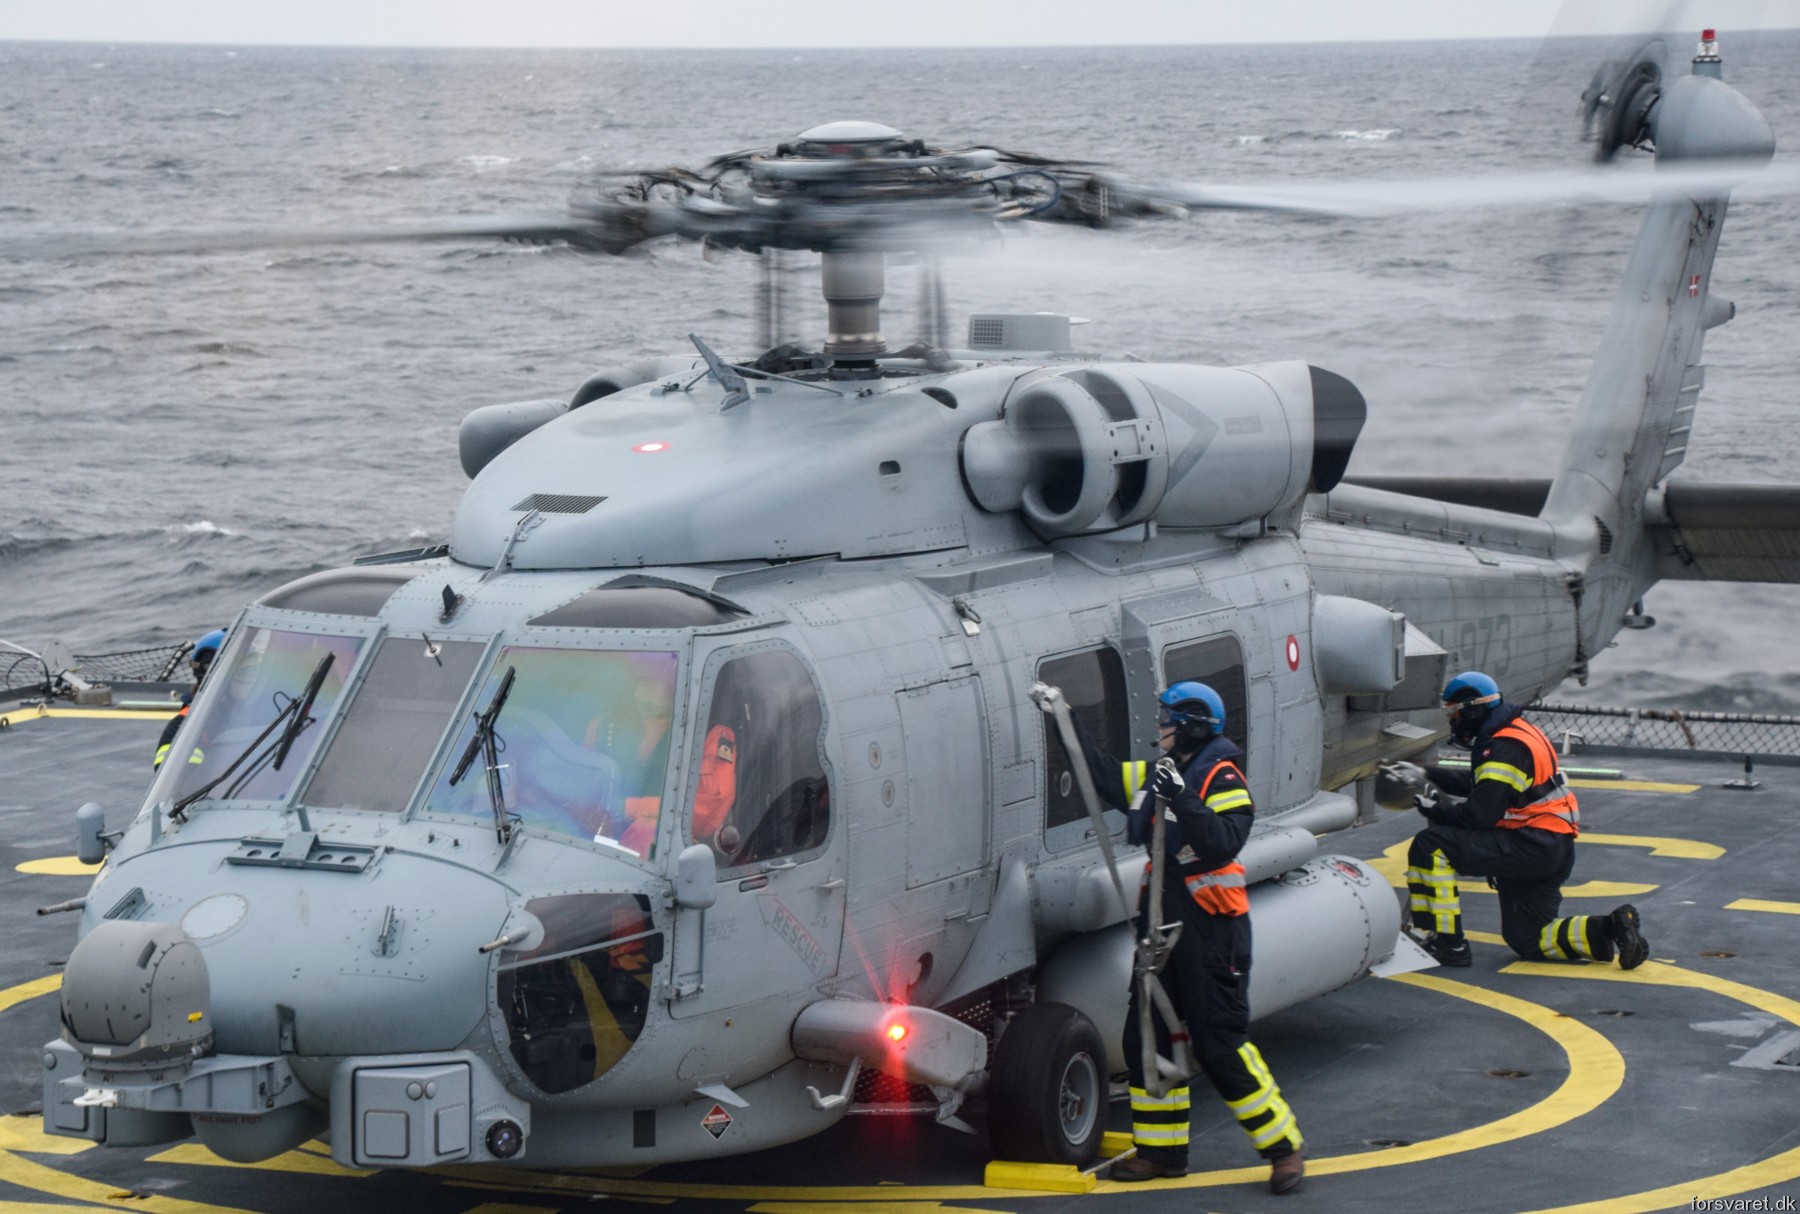 mh-60r seahawk royal danish navy air force flyvevåbnet kongelige danske marine sikorsky helicopter 723 eskadrille squadron karup 16